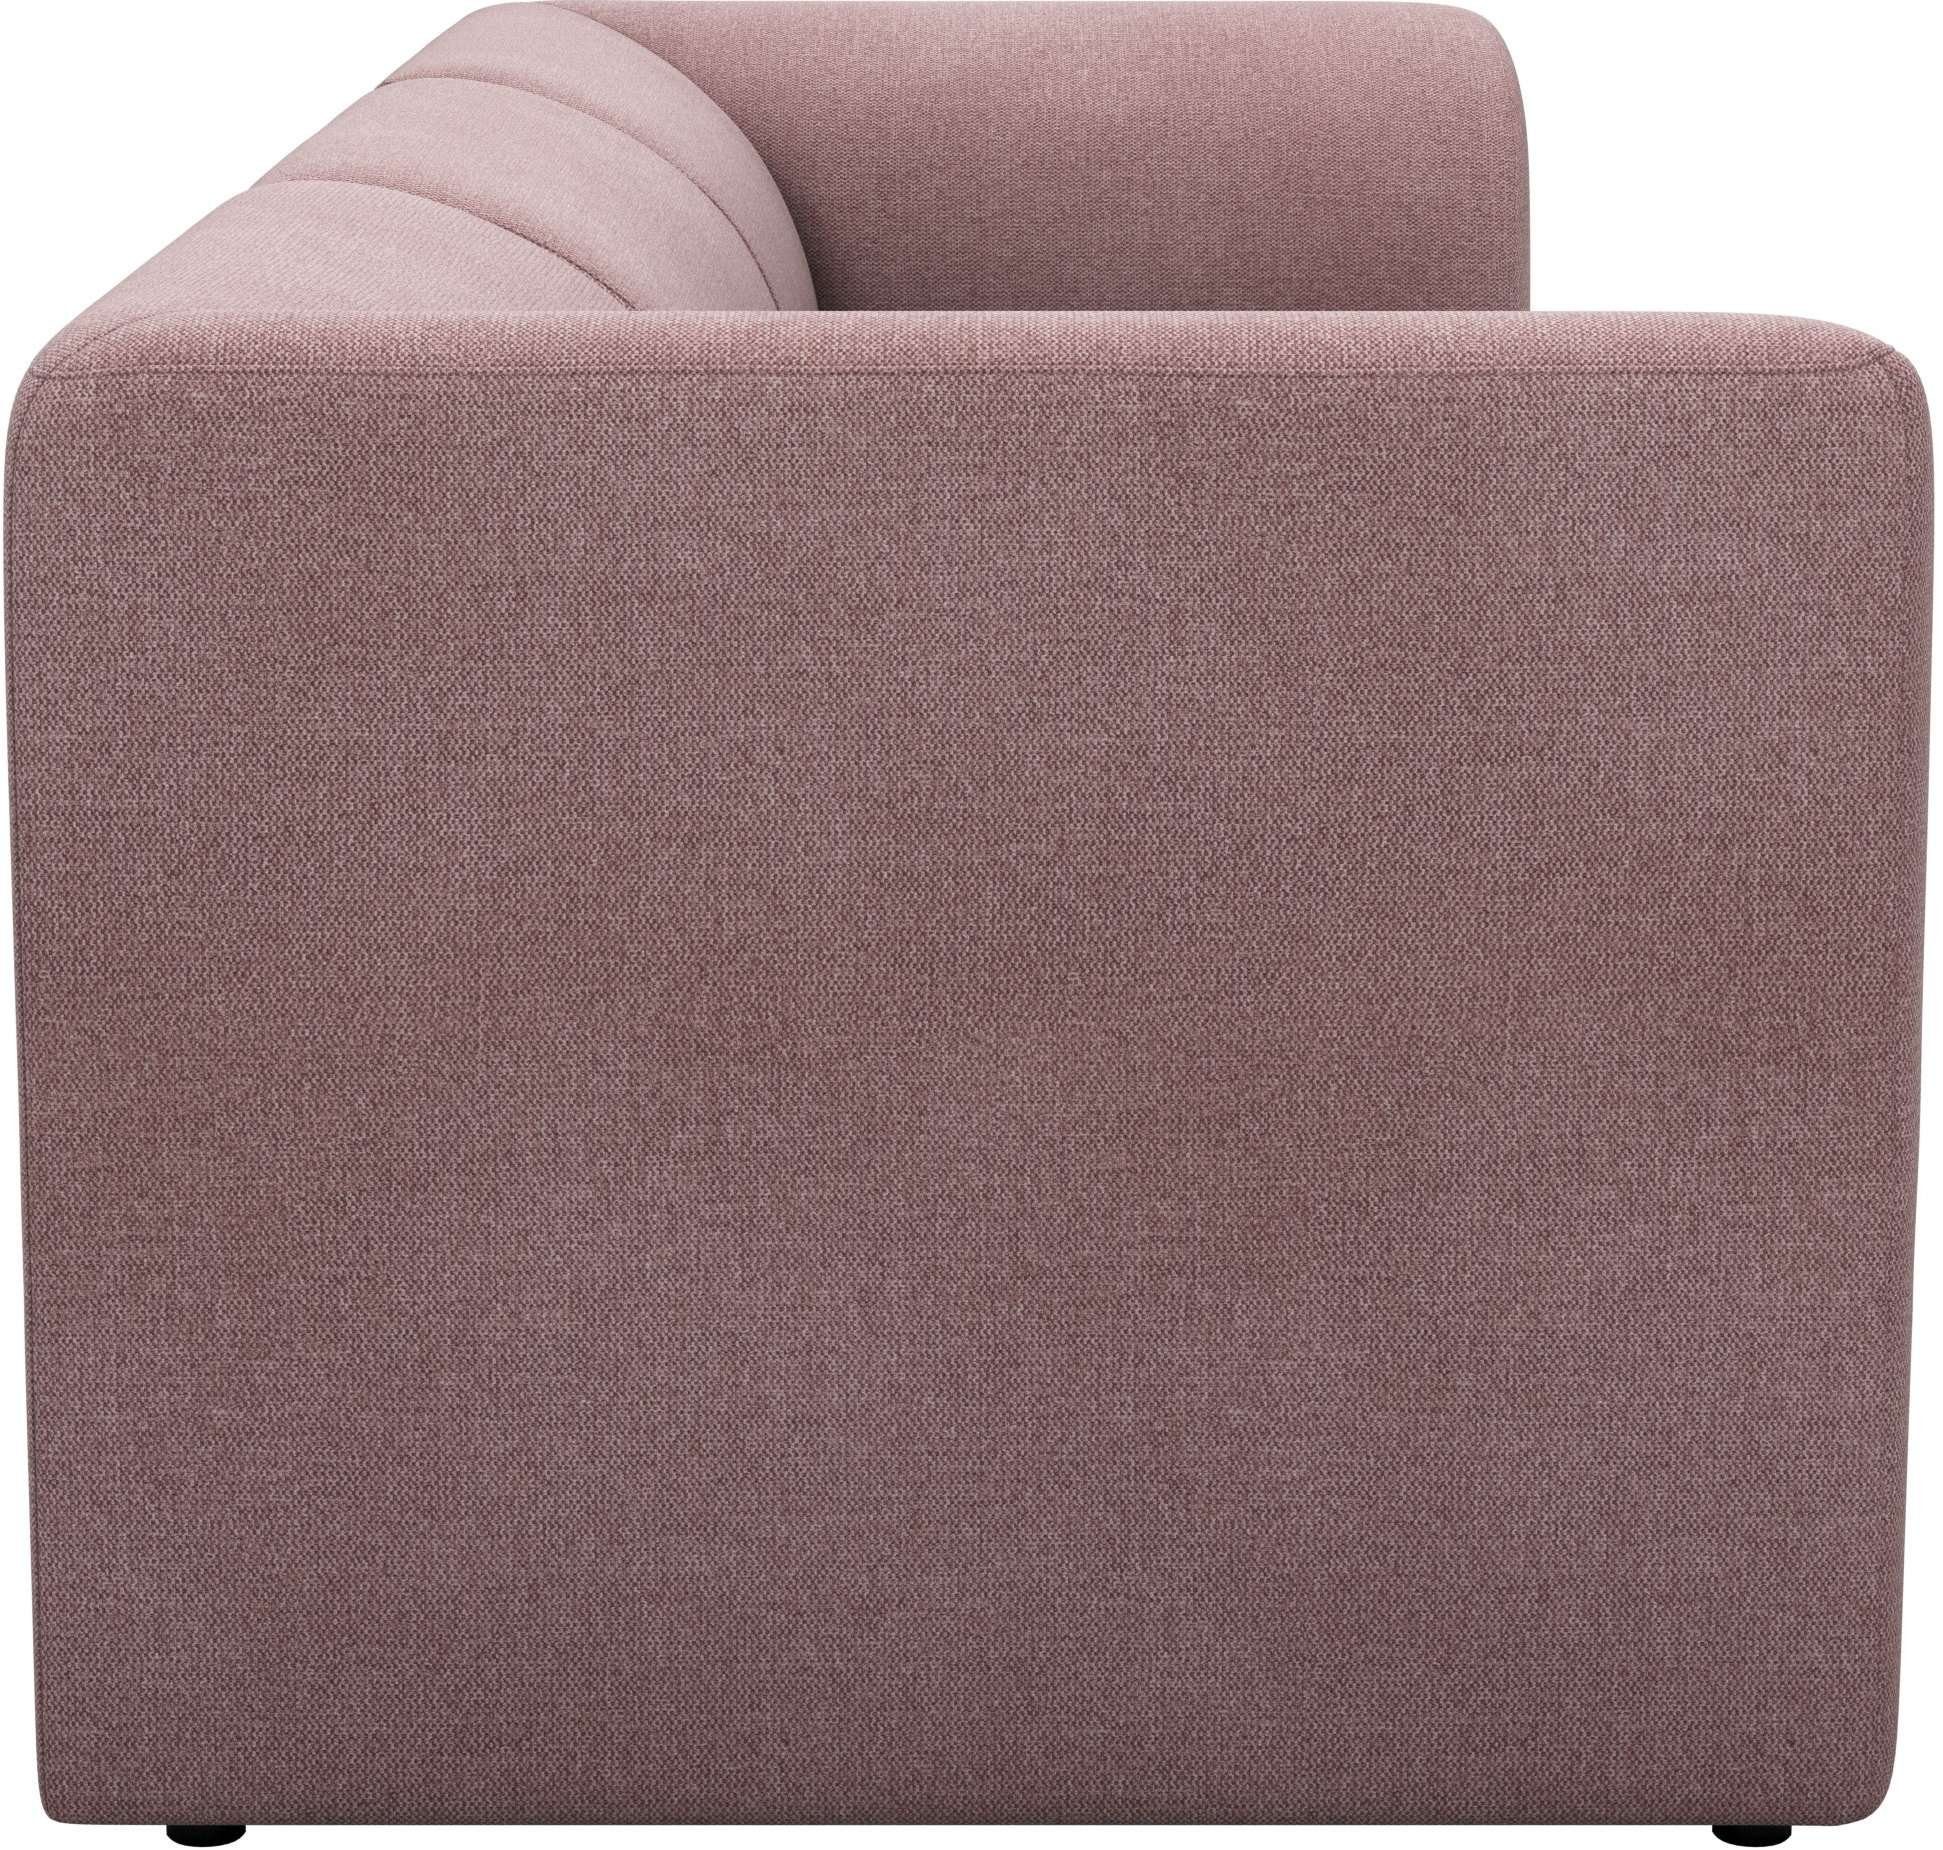 3-Sitzer Sofa, Home Gercke LeGer Lena Komfortschaum-Polsterung in modulares Floria, trendigen Farben, mit by